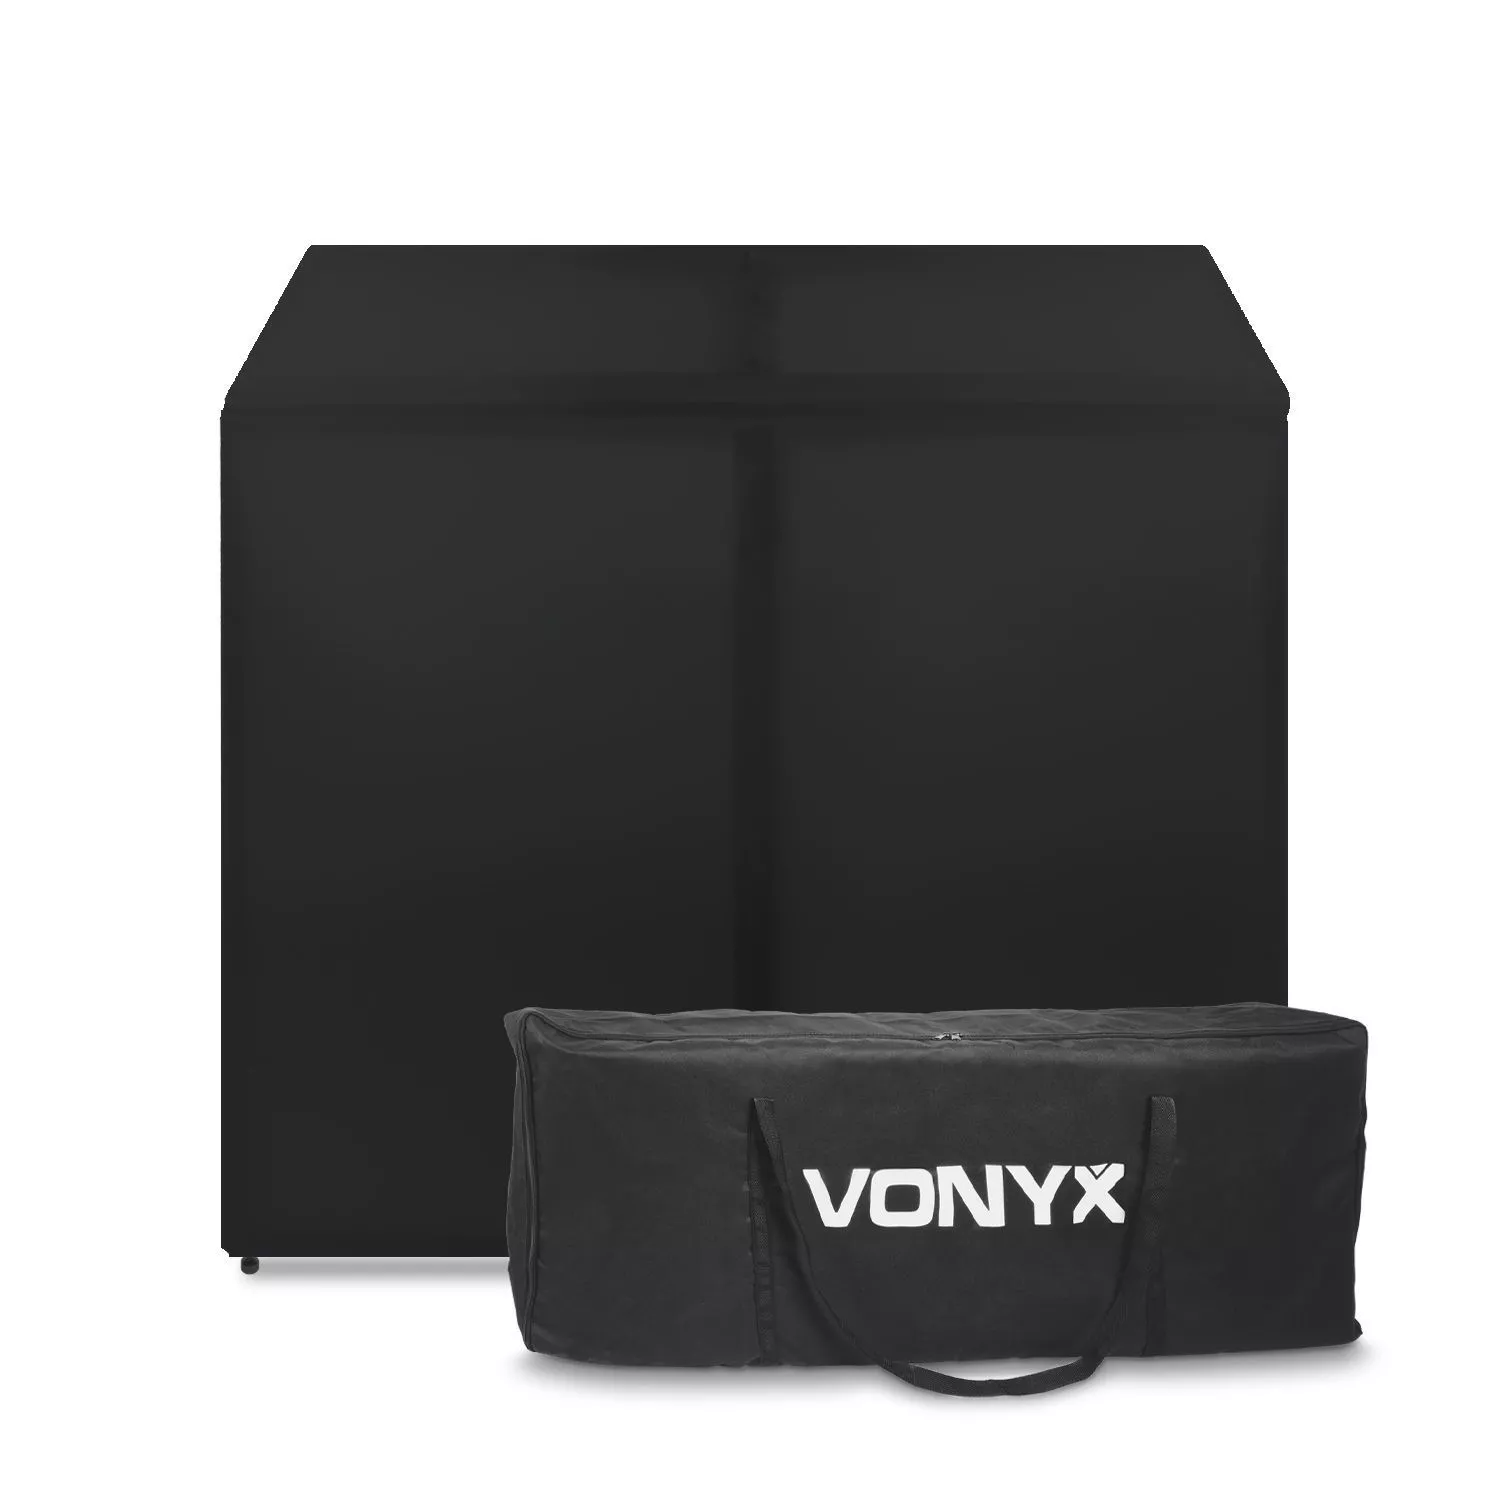 Vonyx zwart dj booth|dj gear - retourdeals